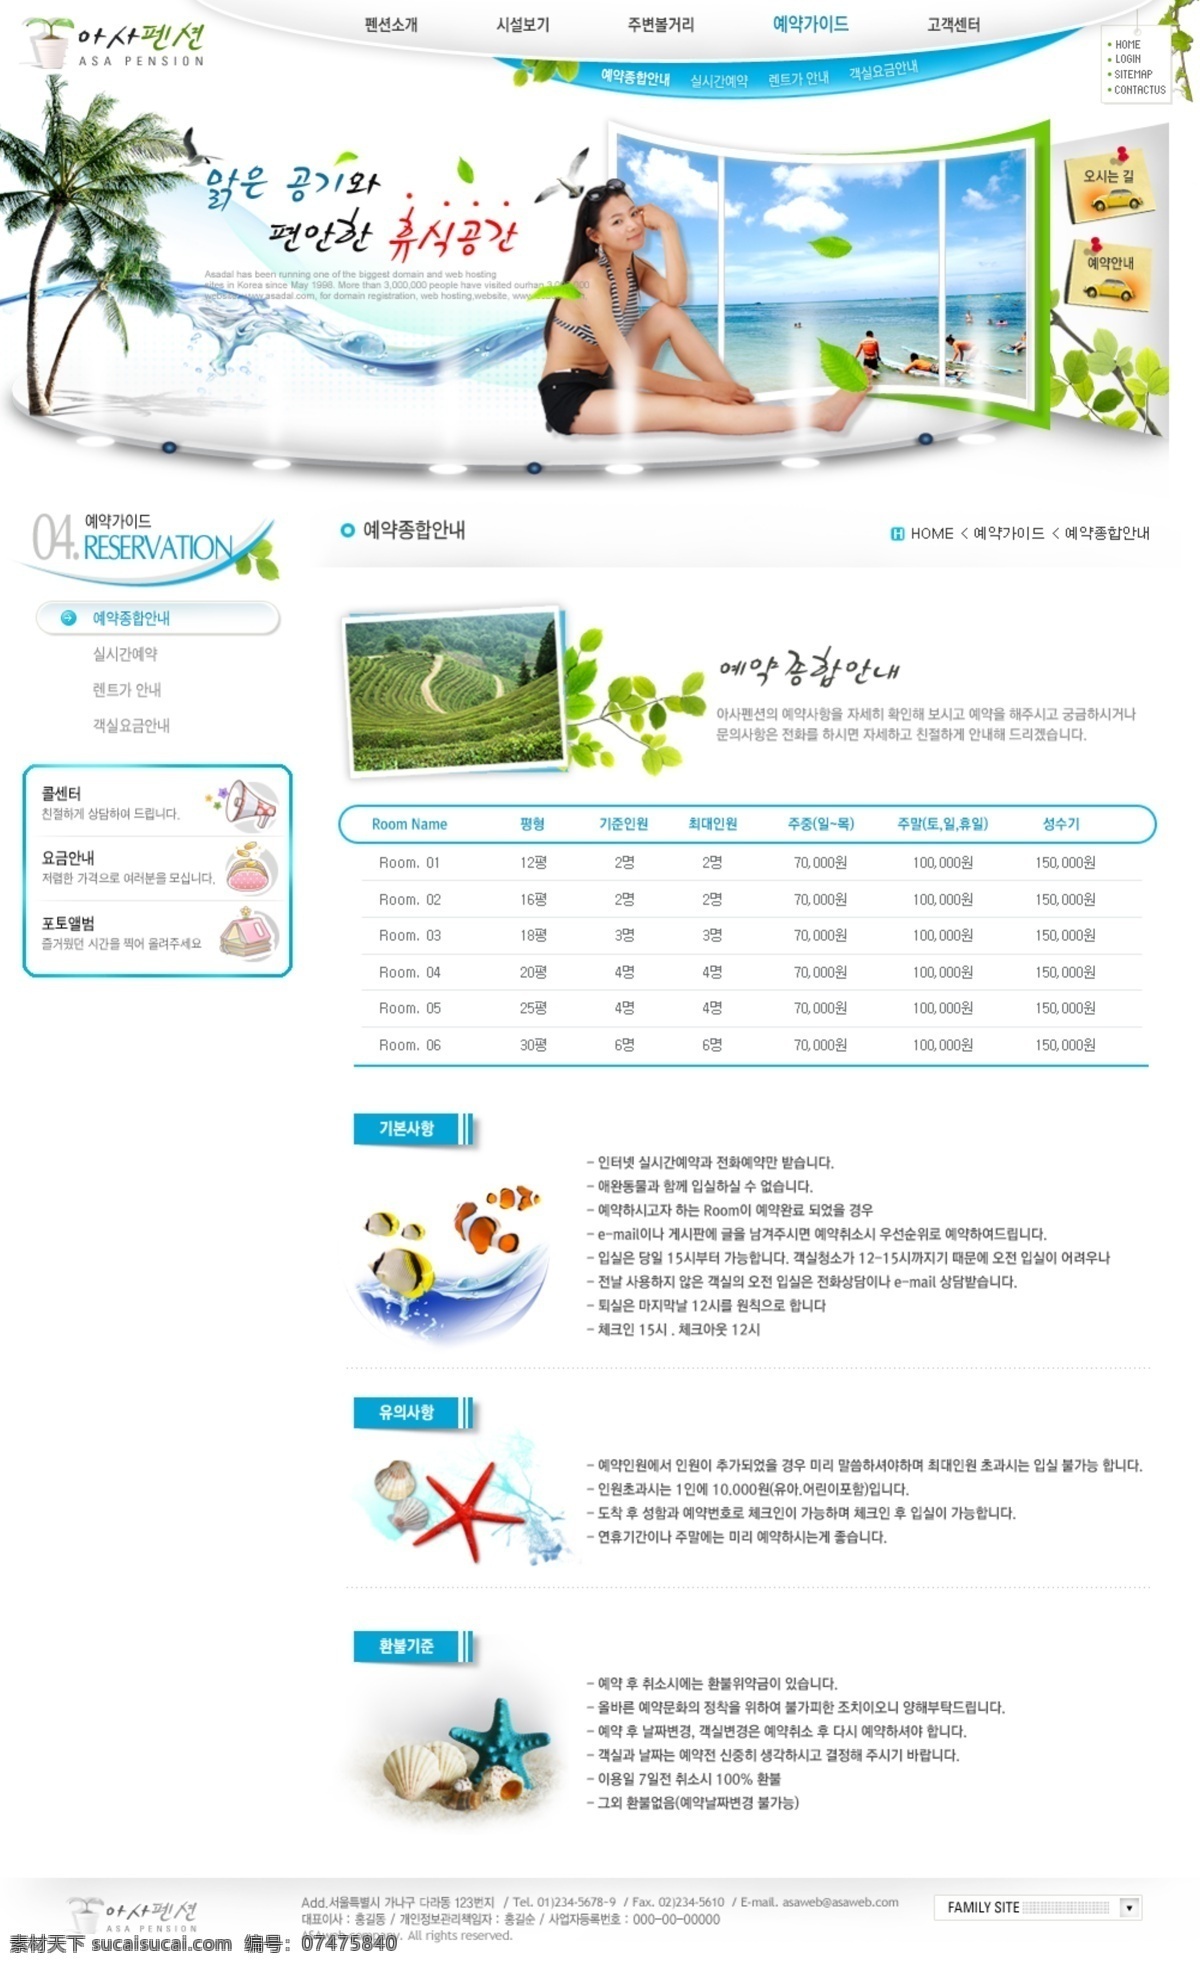 别墅建筑 导航设计 韩国网页 界面设计 旅游网站 女性女人 首页设计 网页界面 网页模板 网页设计 自然风景 椰树 网站设计模板 分栏设计 网页素材